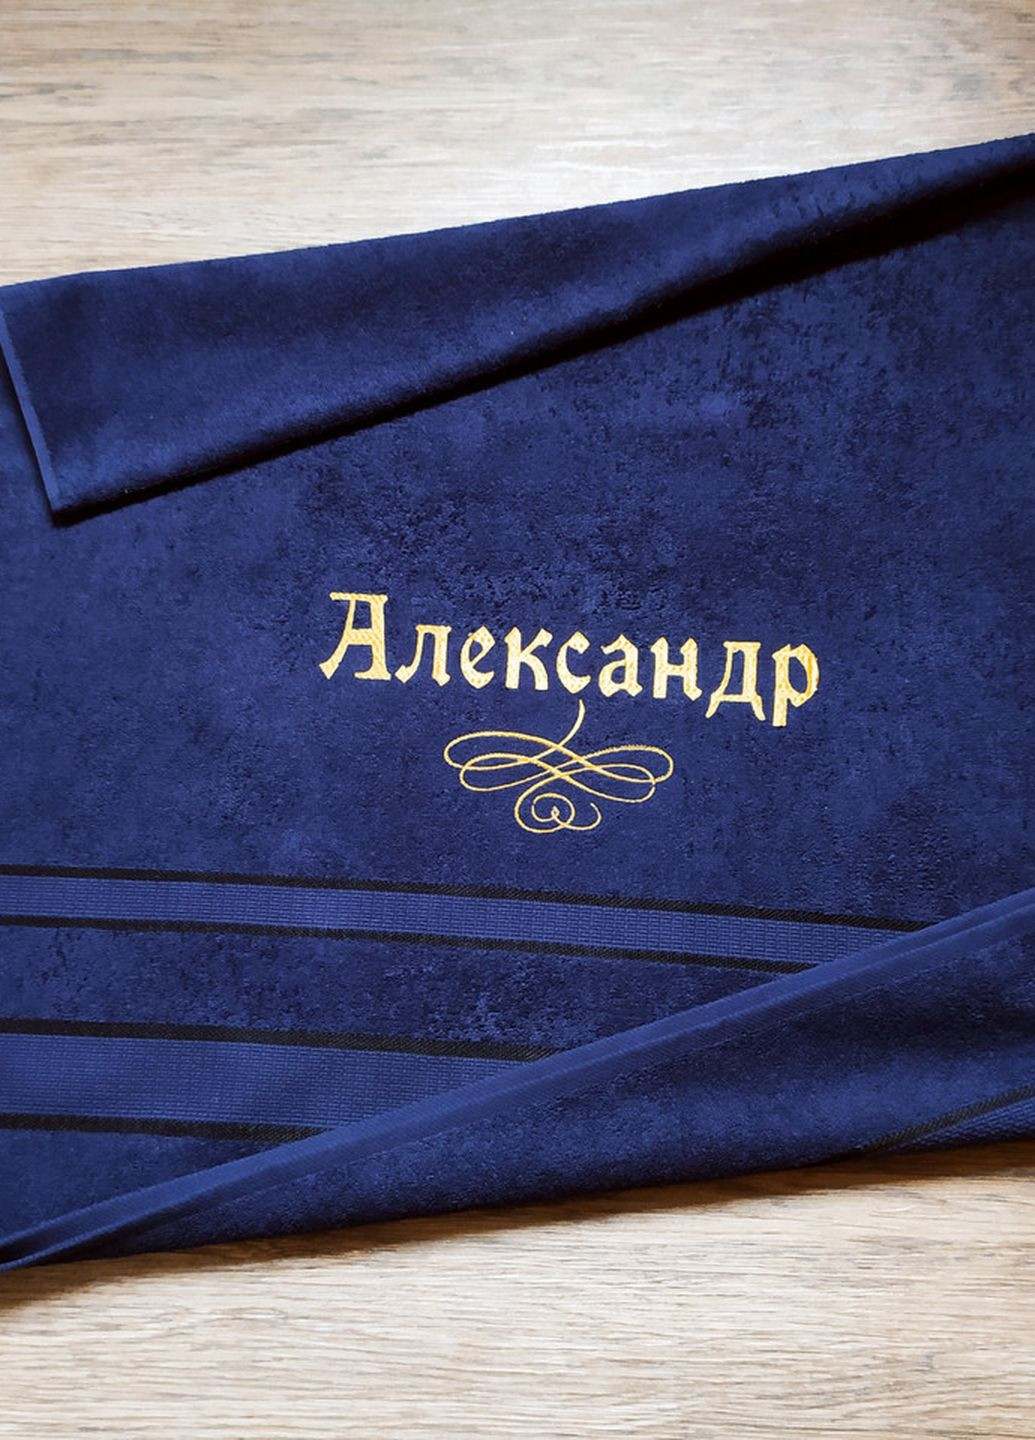 No Brand полотенце с именной вышивкой махровое банное 70*140 темно-синий александр 00117 однотонный темно-синий производство - Украина